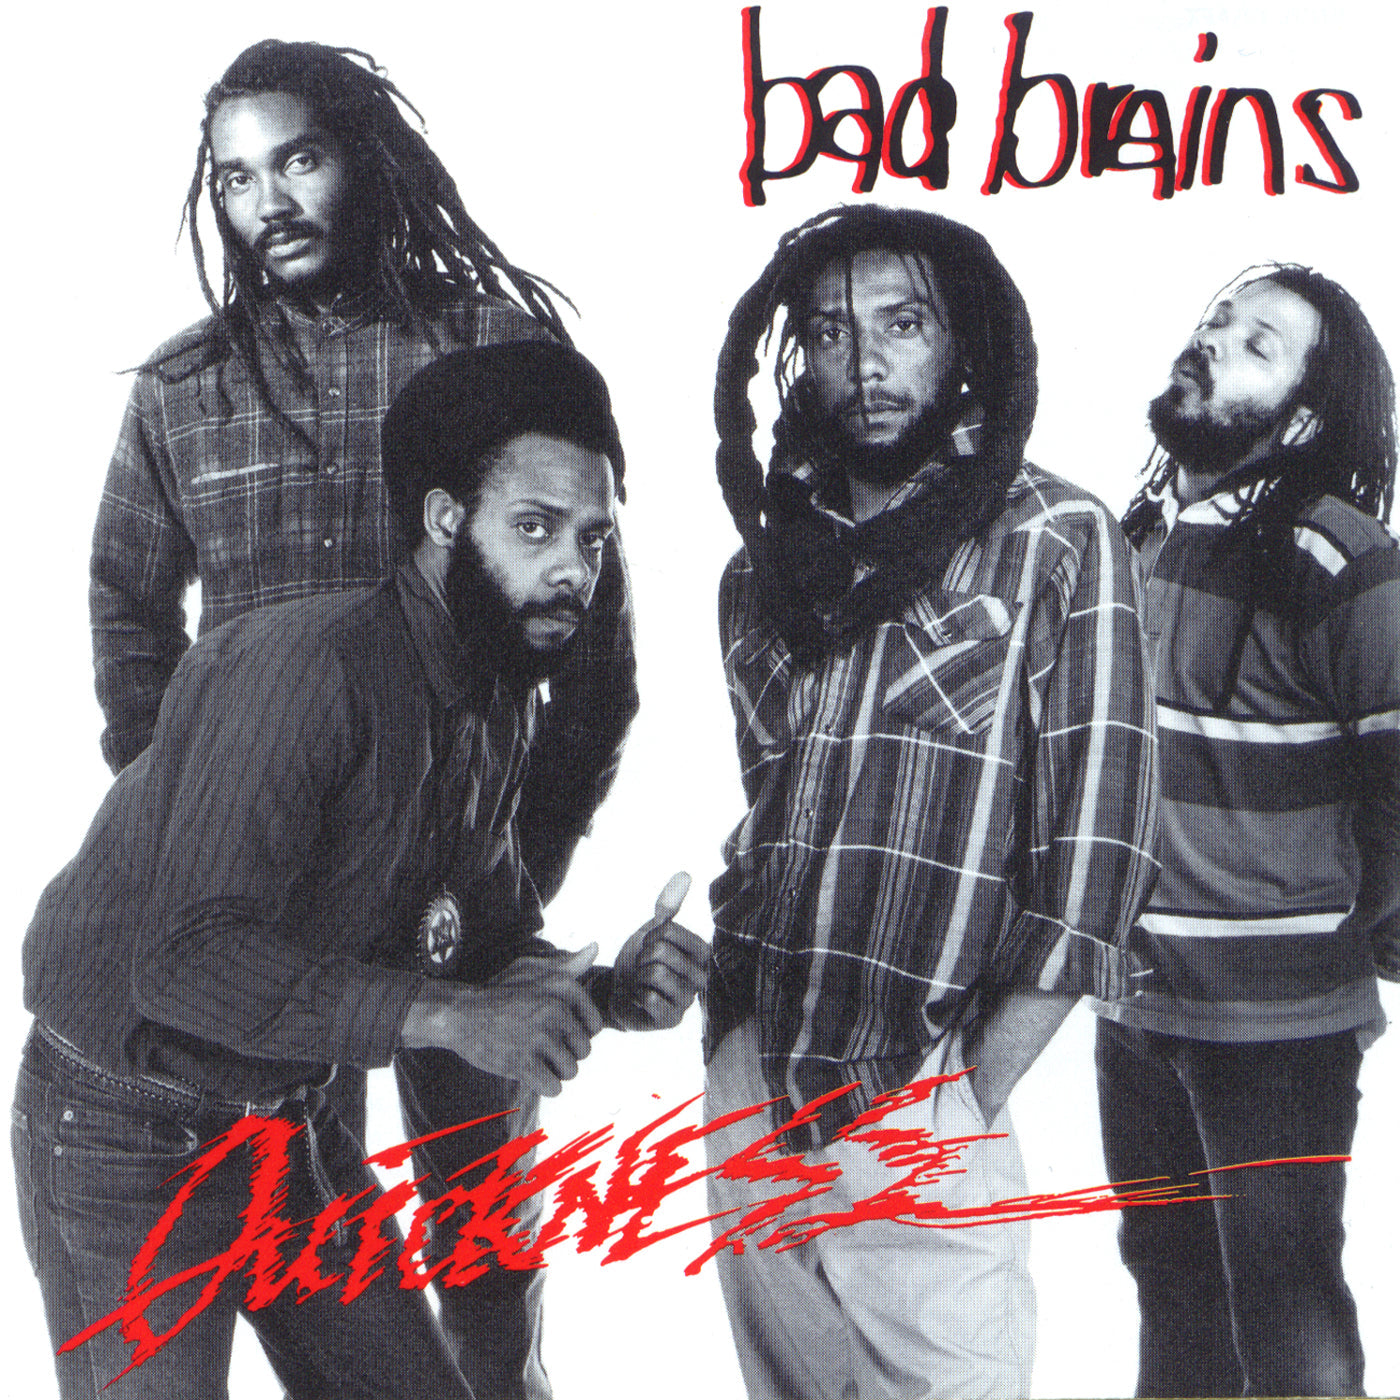 Bad Brains "Quickness" LP